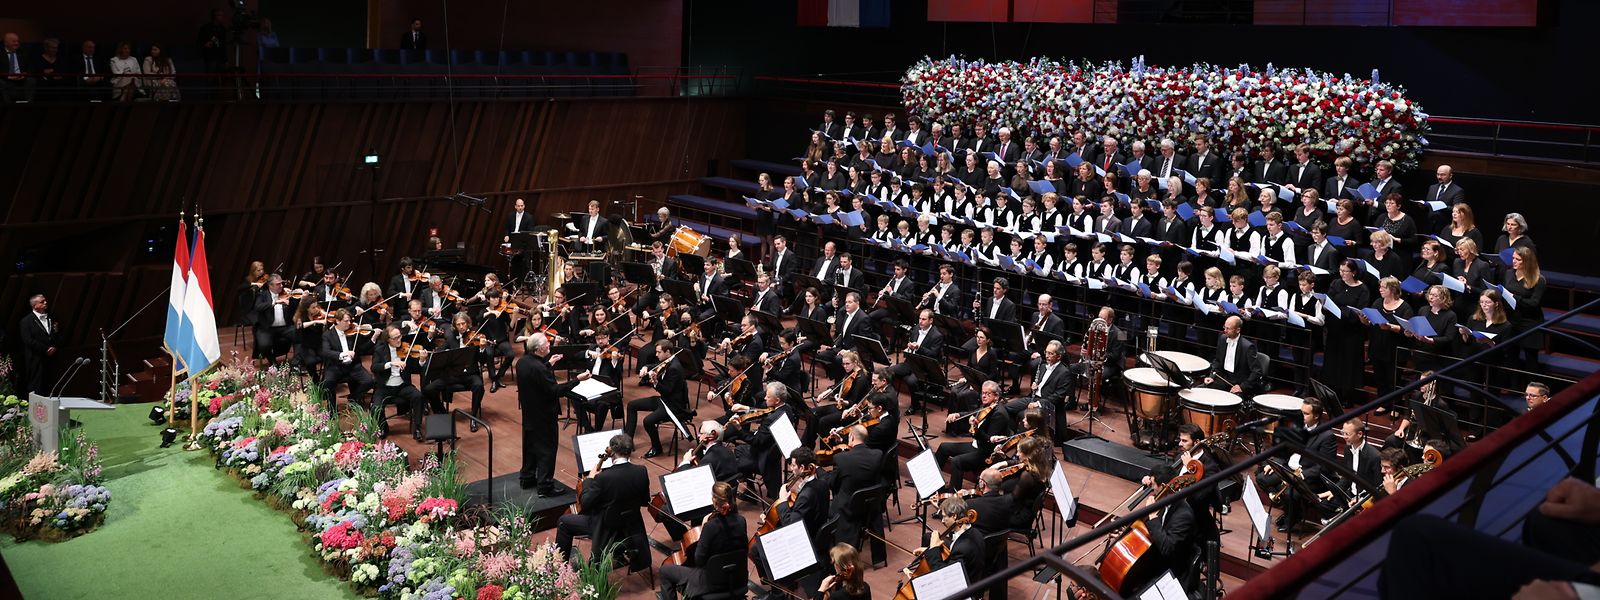 Untermalt wurden die Feierlichkeiten in der Philharmonie am Donnerstag vom Orchestre Philharmonique du Luxembourg (OPL). 